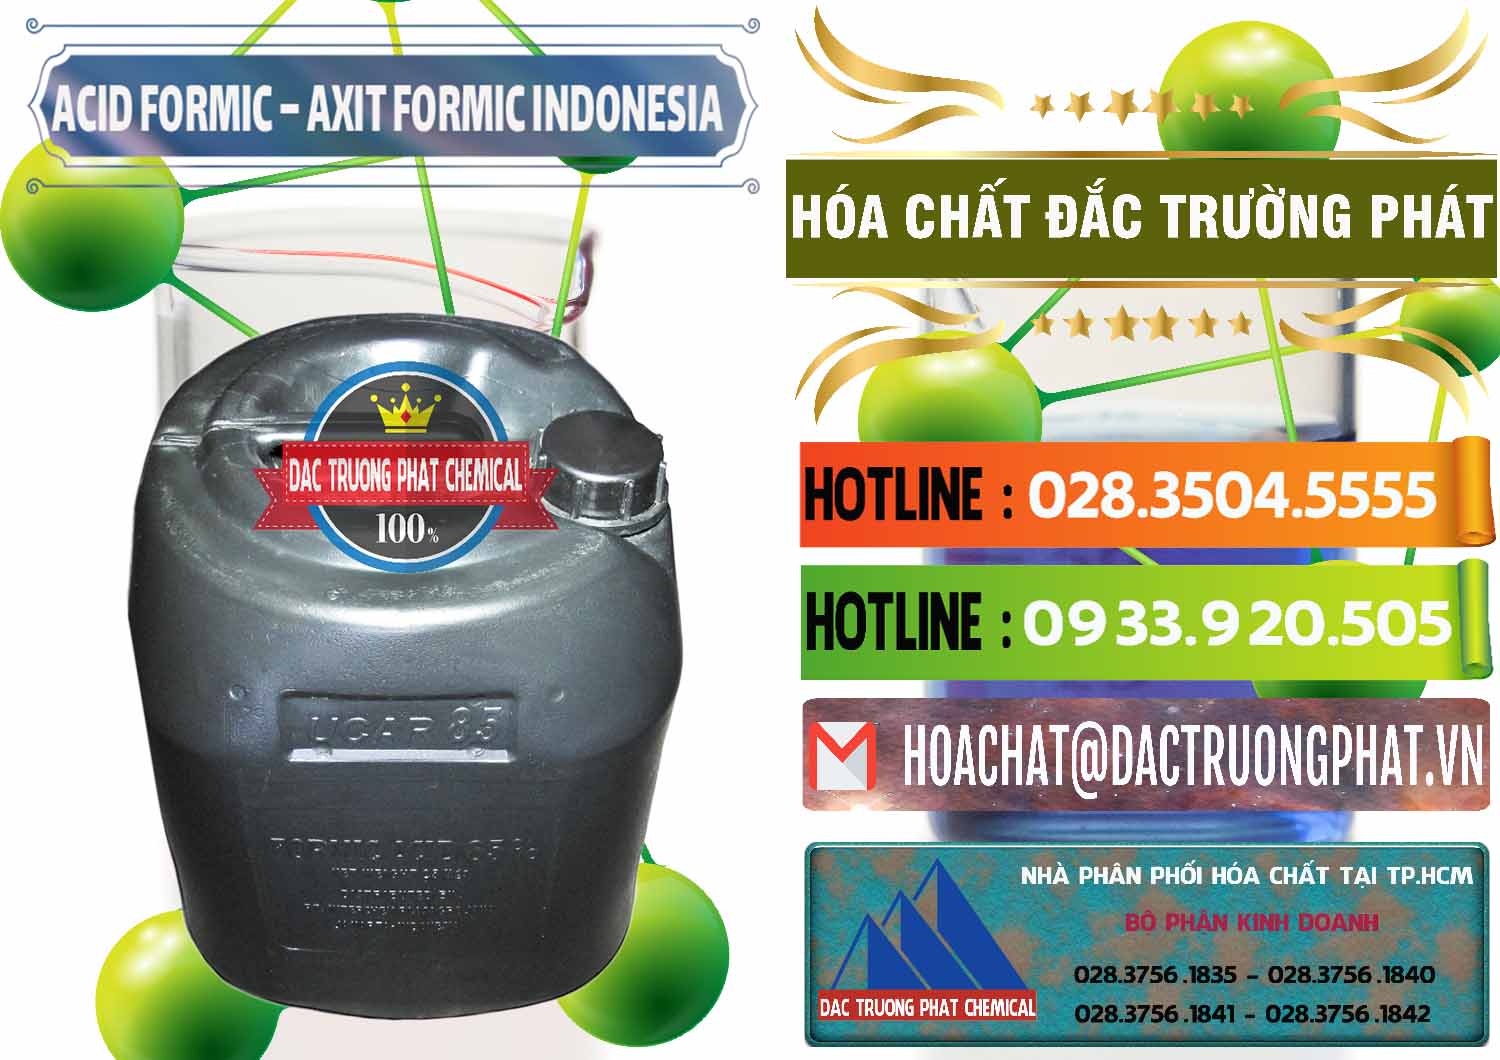 Nhà cung cấp & bán Acid Formic - Axit Formic Indonesia - 0026 - Chuyên nhập khẩu và cung cấp hóa chất tại TP.HCM - cungcaphoachat.com.vn